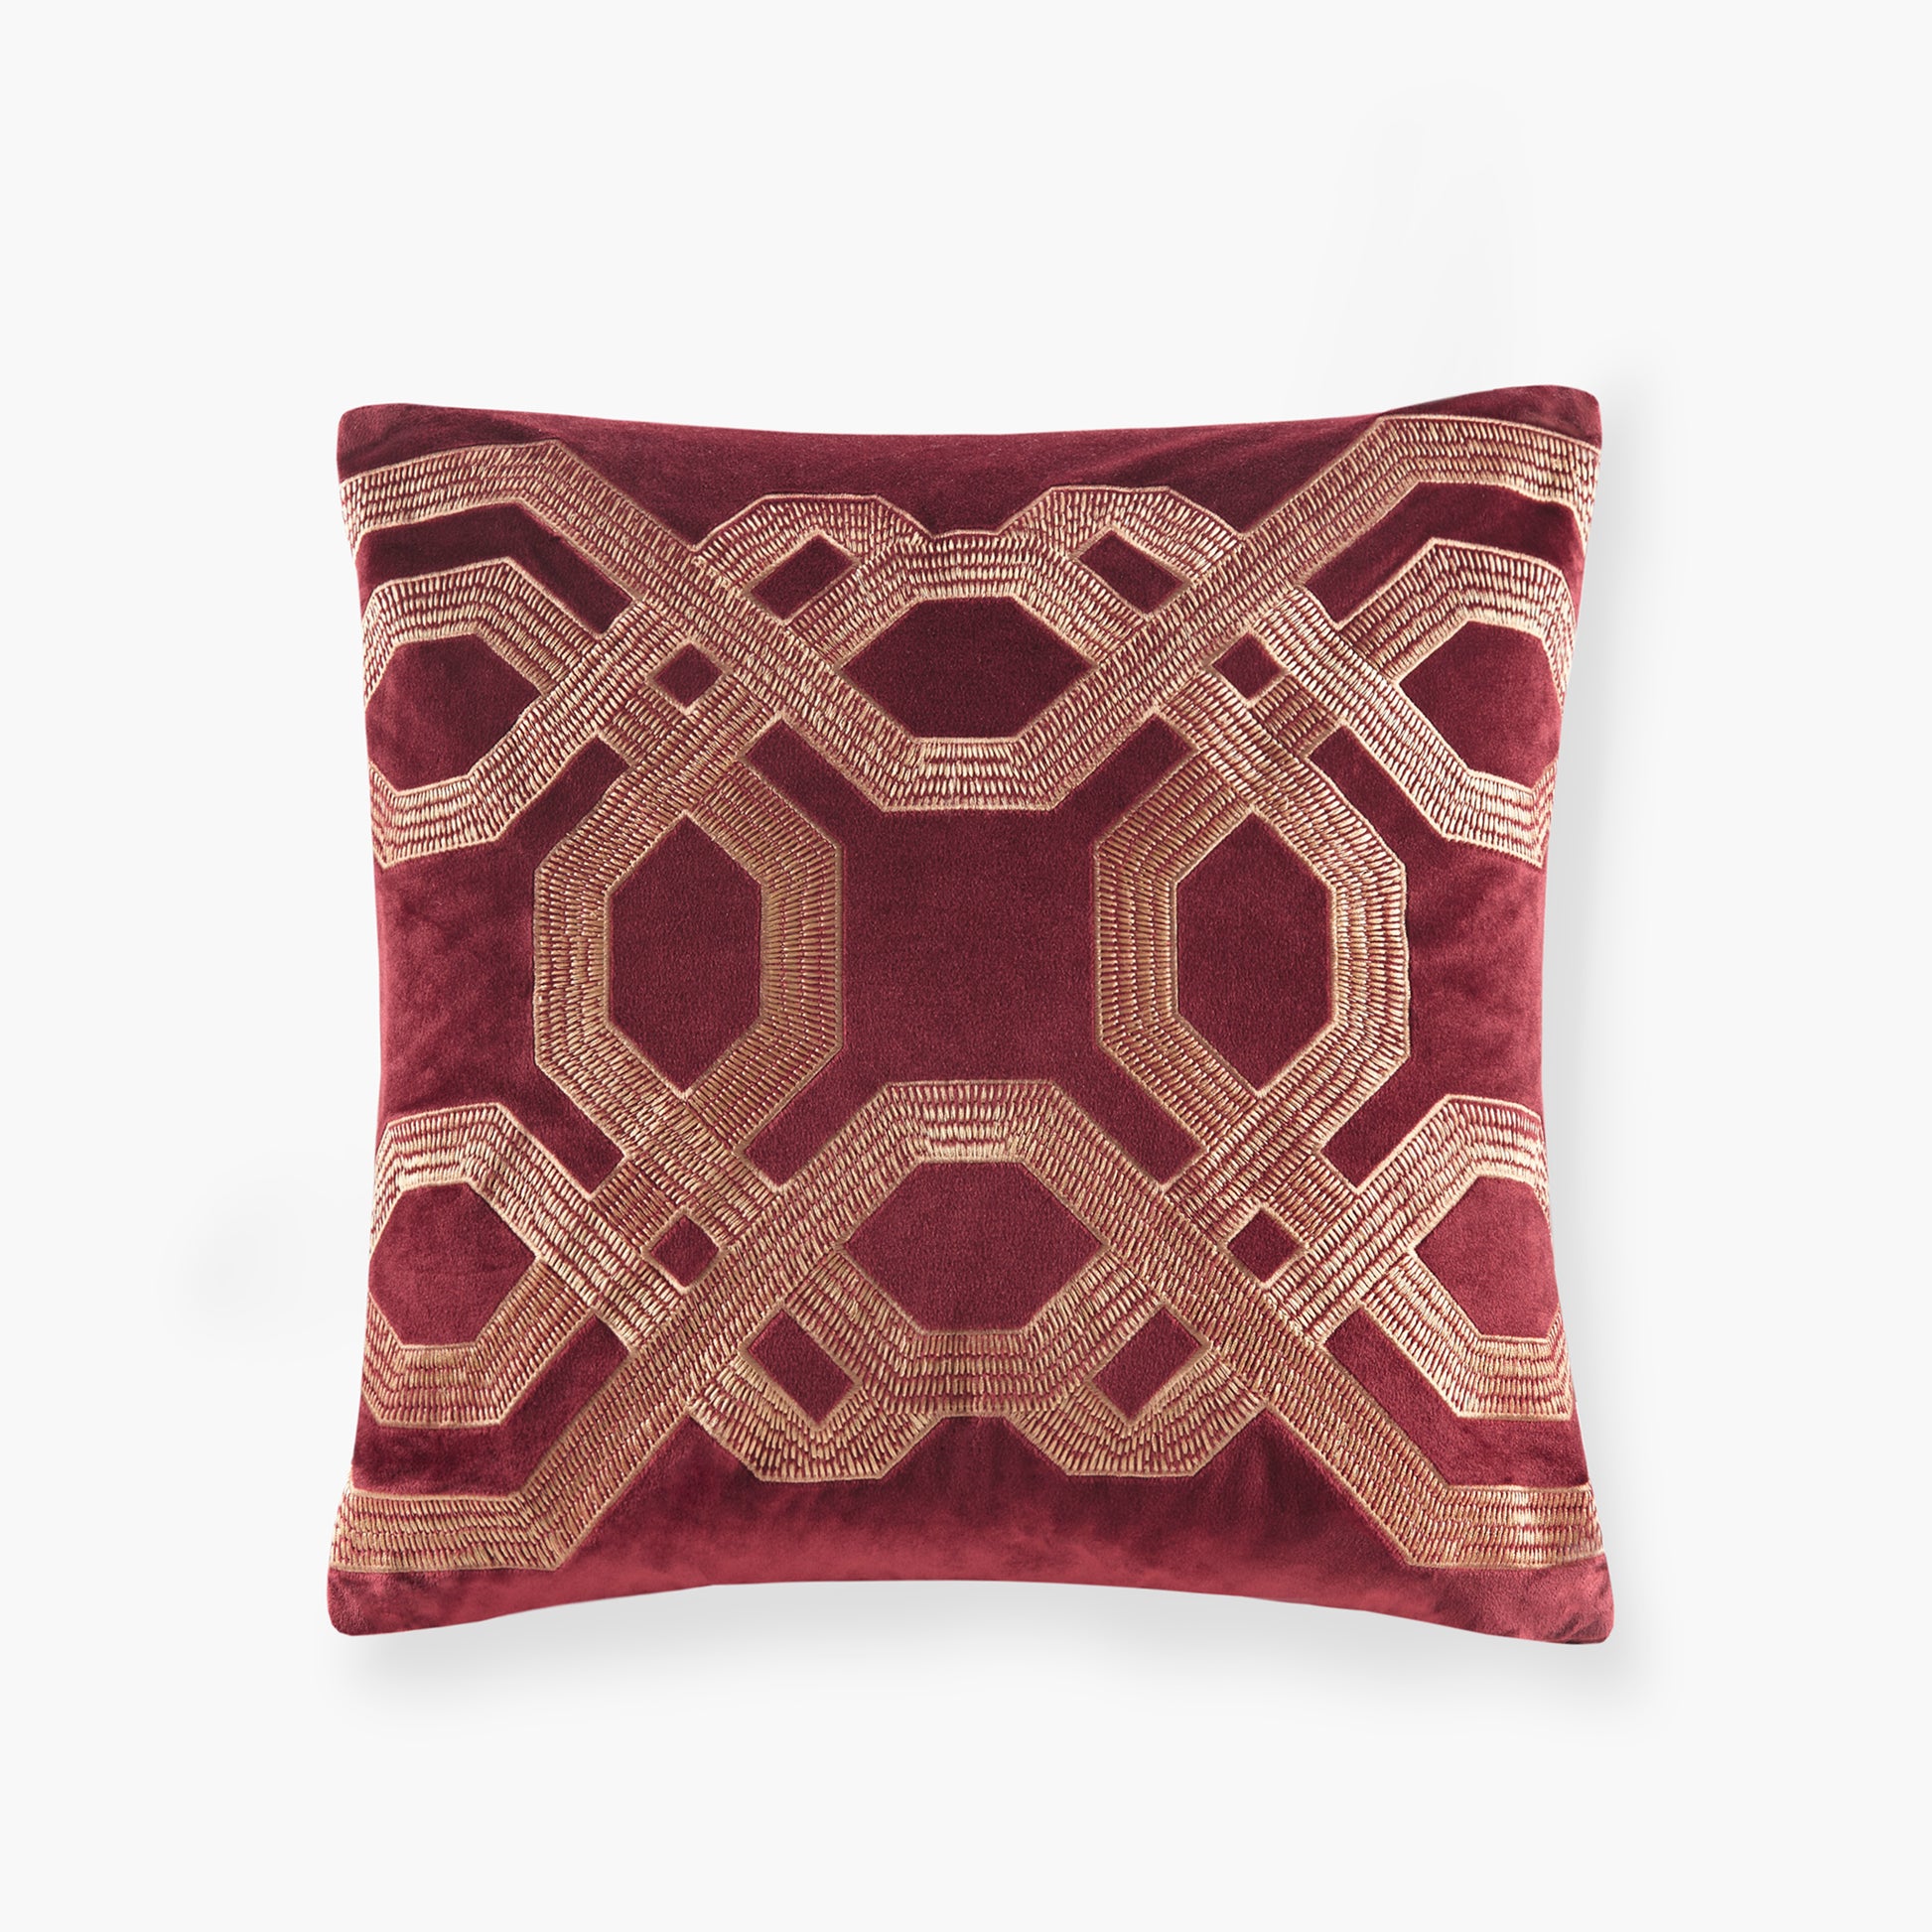 Croscill Decorative Pillows - Oblong & Square Bedding Decor